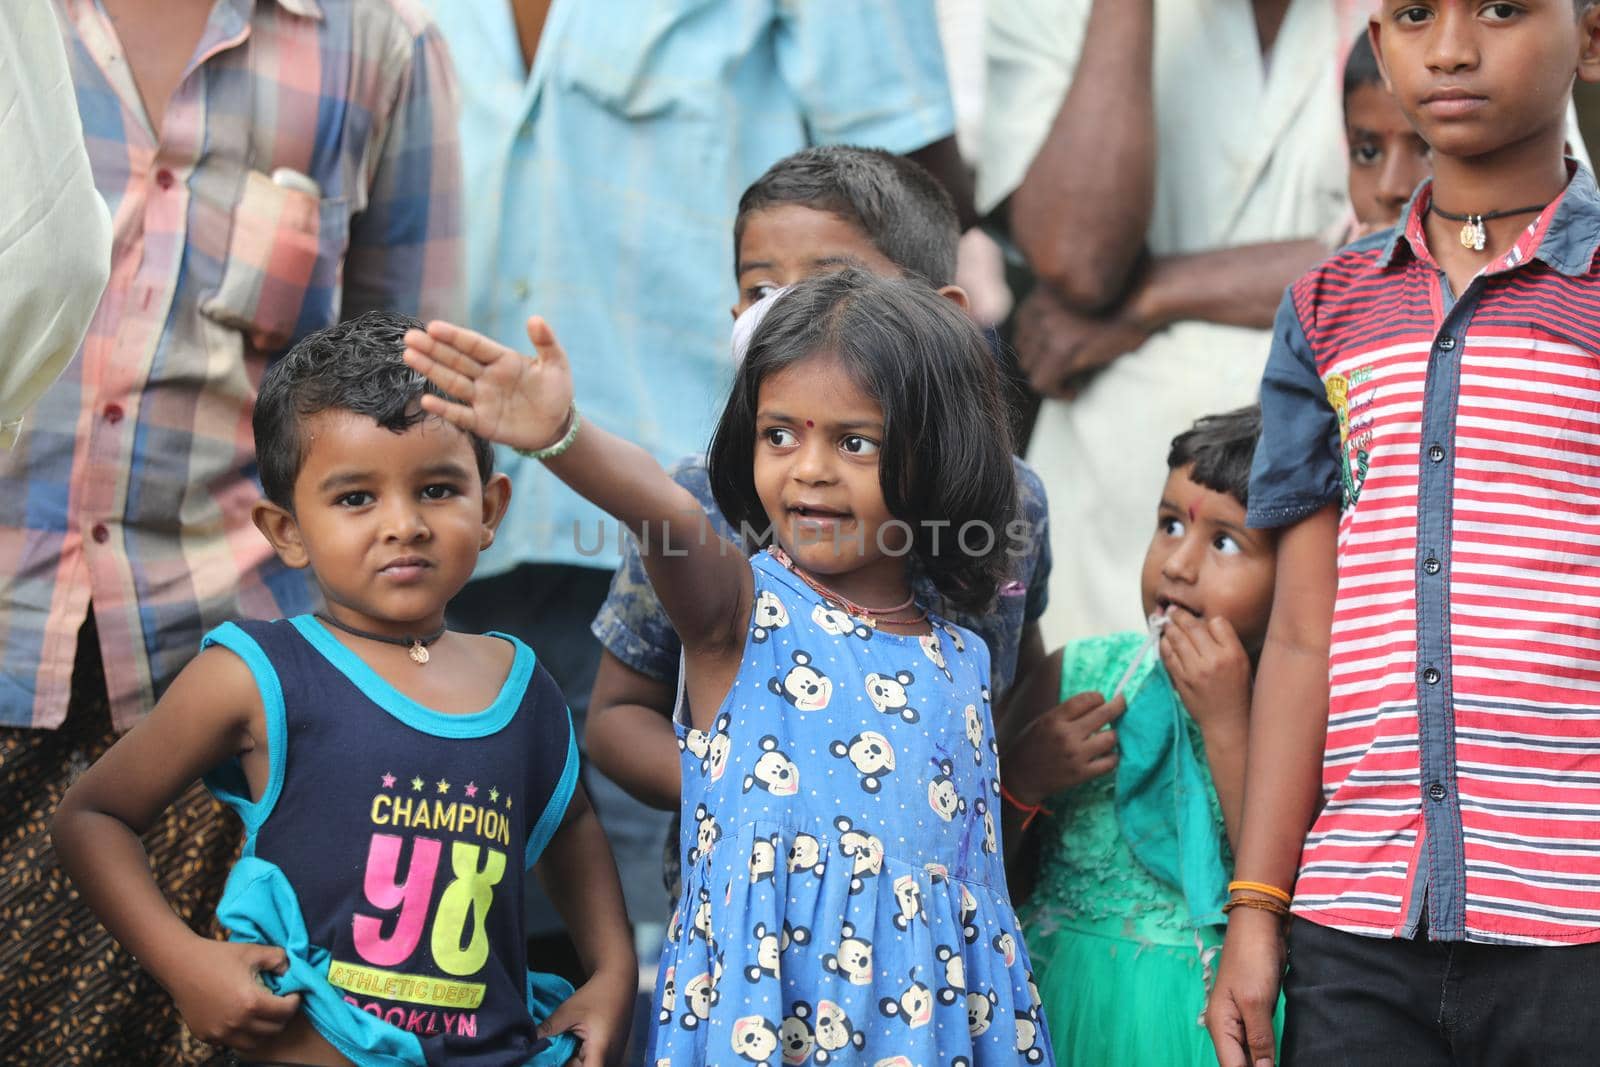 village poor people in Hyderabad India by rajastills